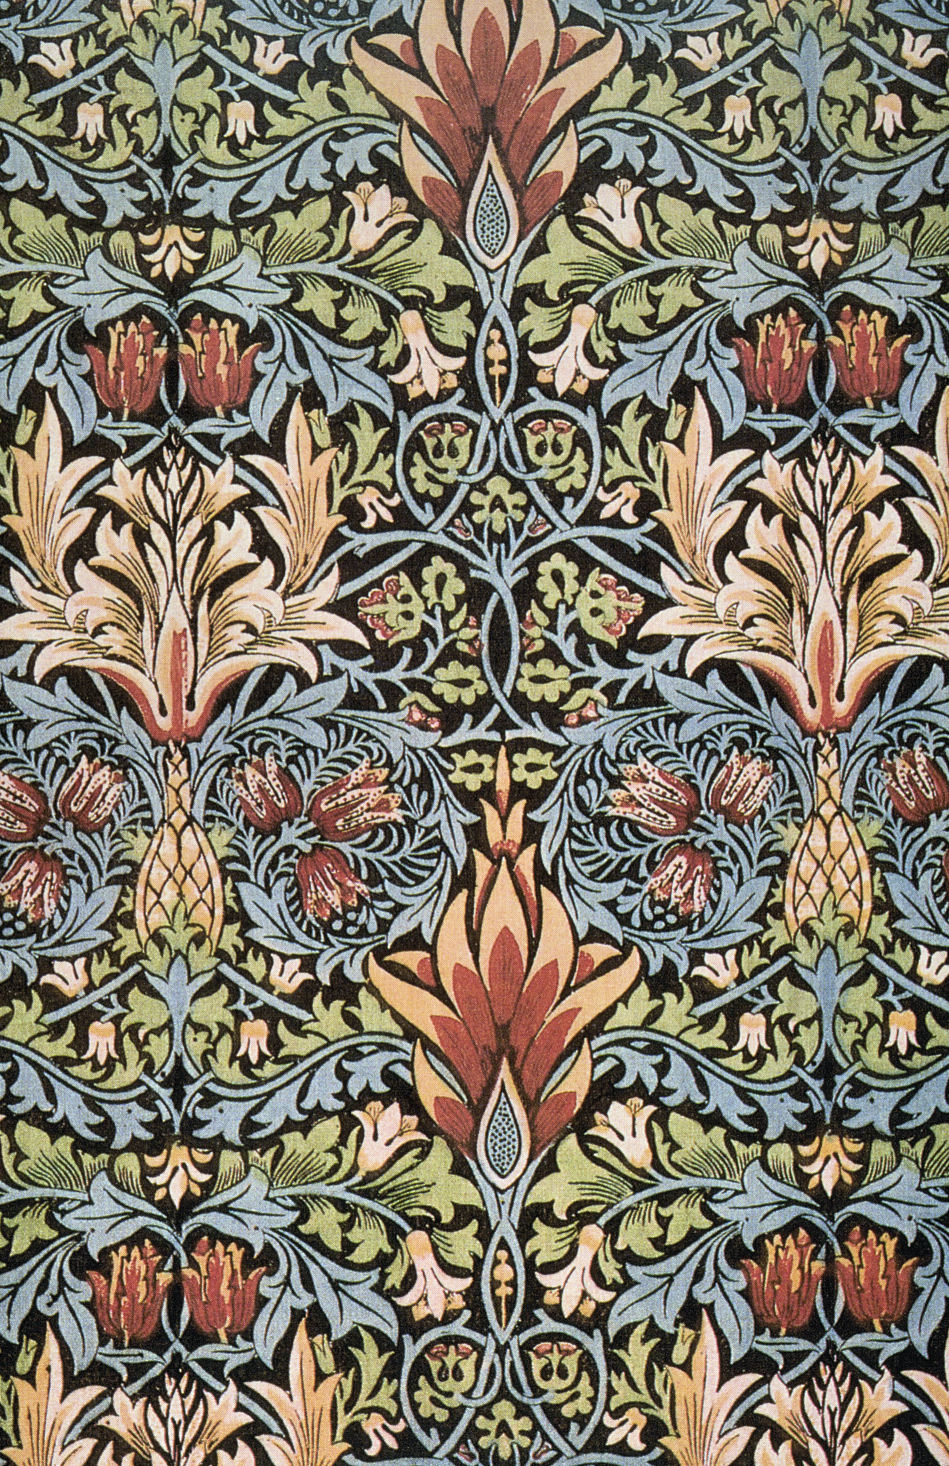 ウィリアム・モリス壁紙デザイン,パターン,褐色,対称,繊維,設計